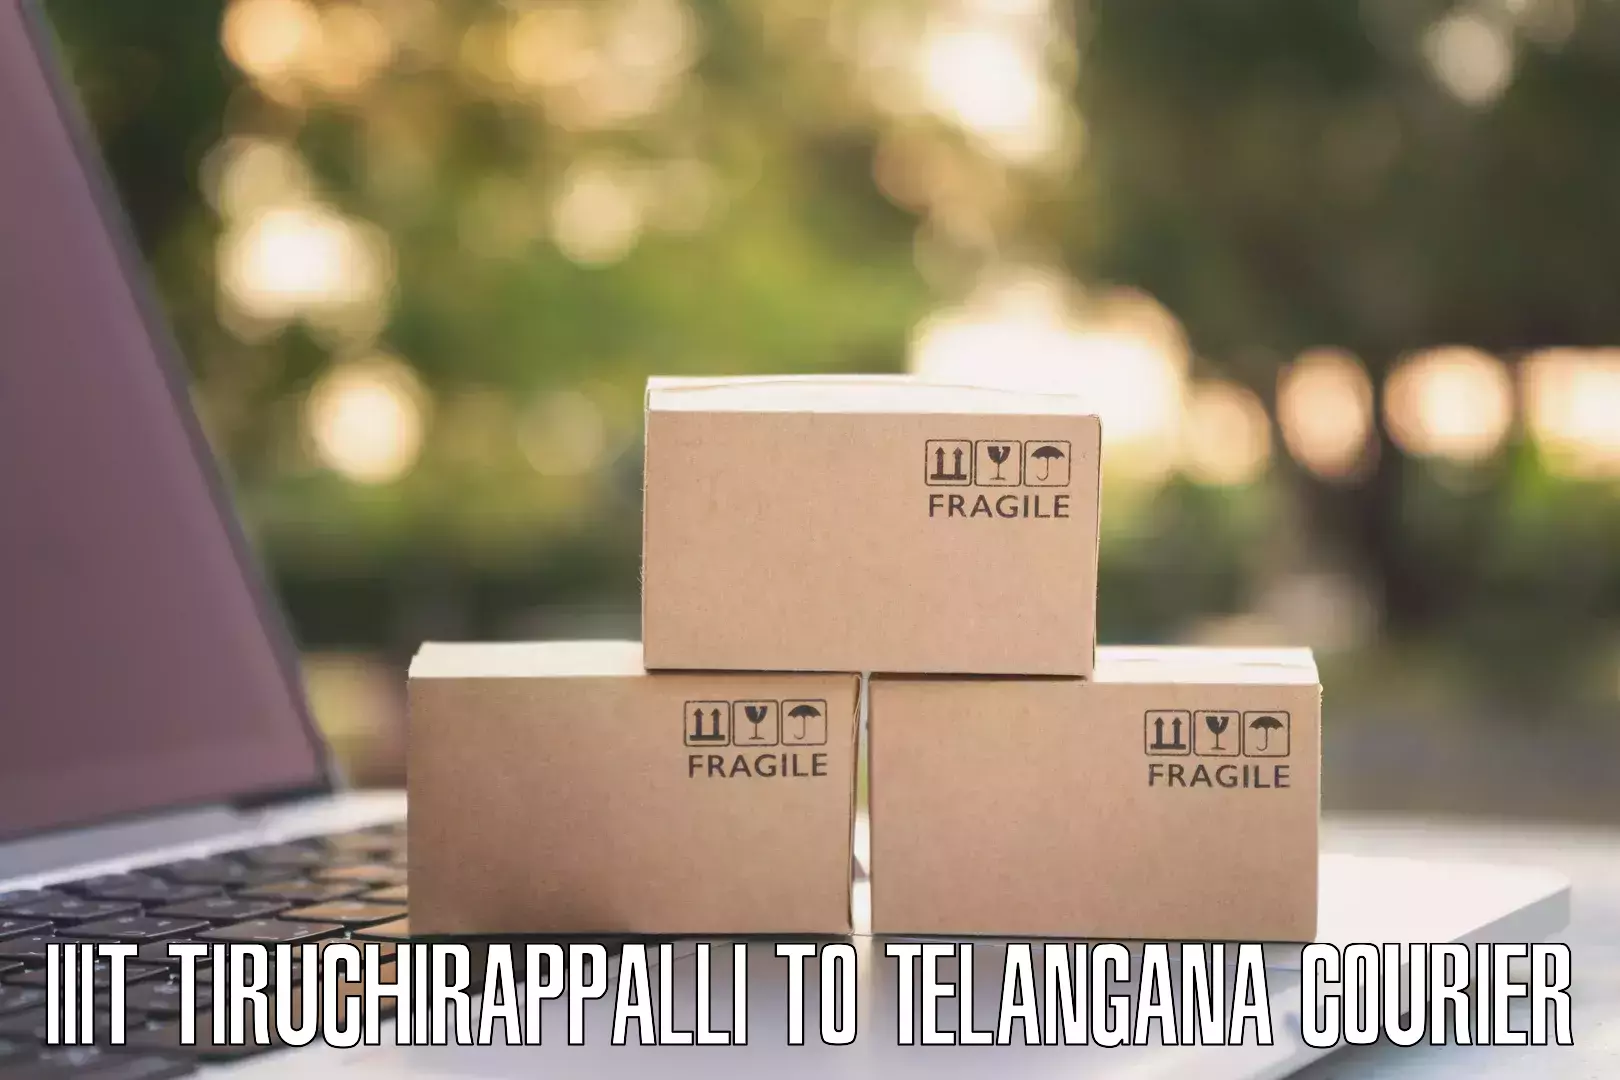 Logistics efficiency IIIT Tiruchirappalli to Wanaparthy